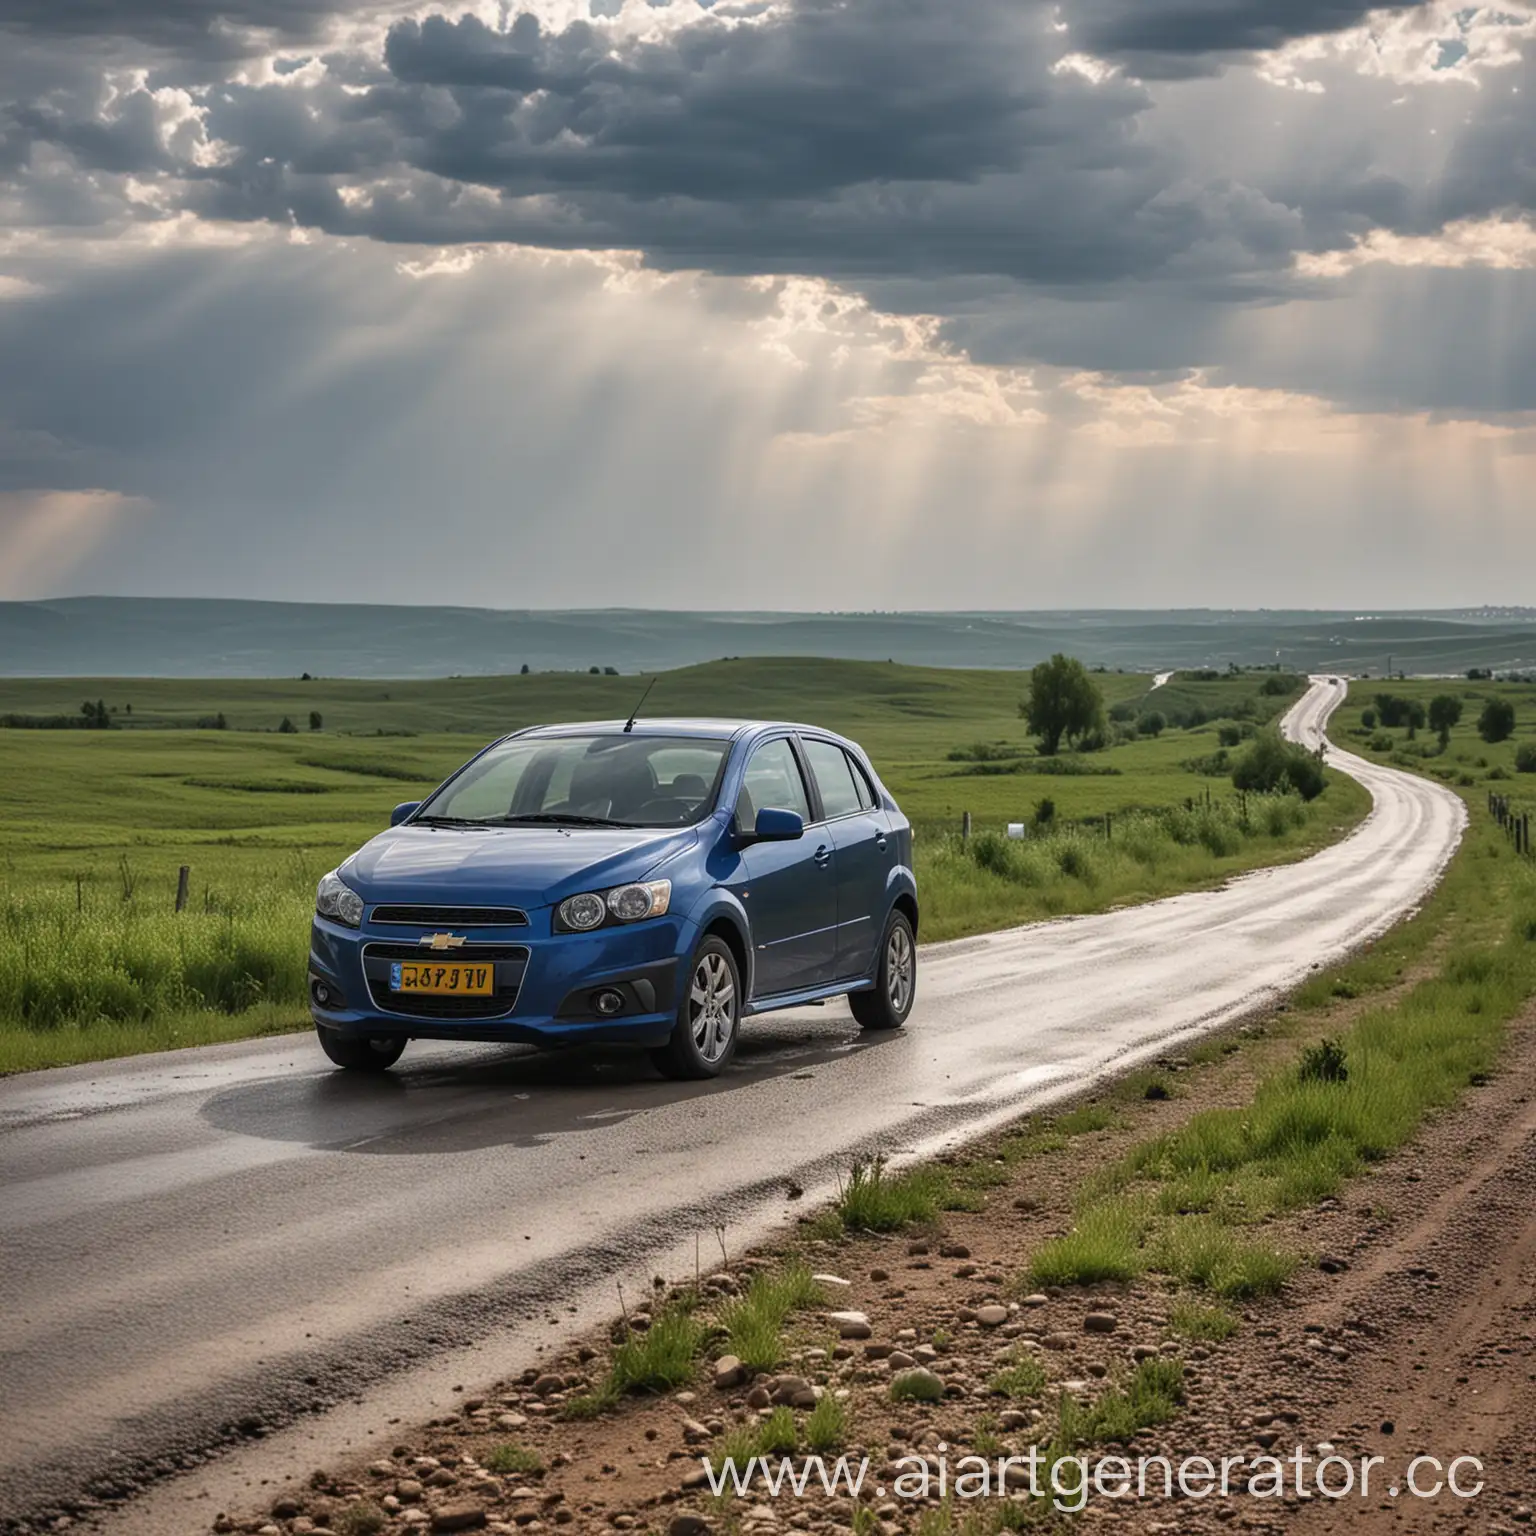 Chevrolet-Aveo-Driving-on-Clear-Road-in-Kazakhstan-Summer-Scene